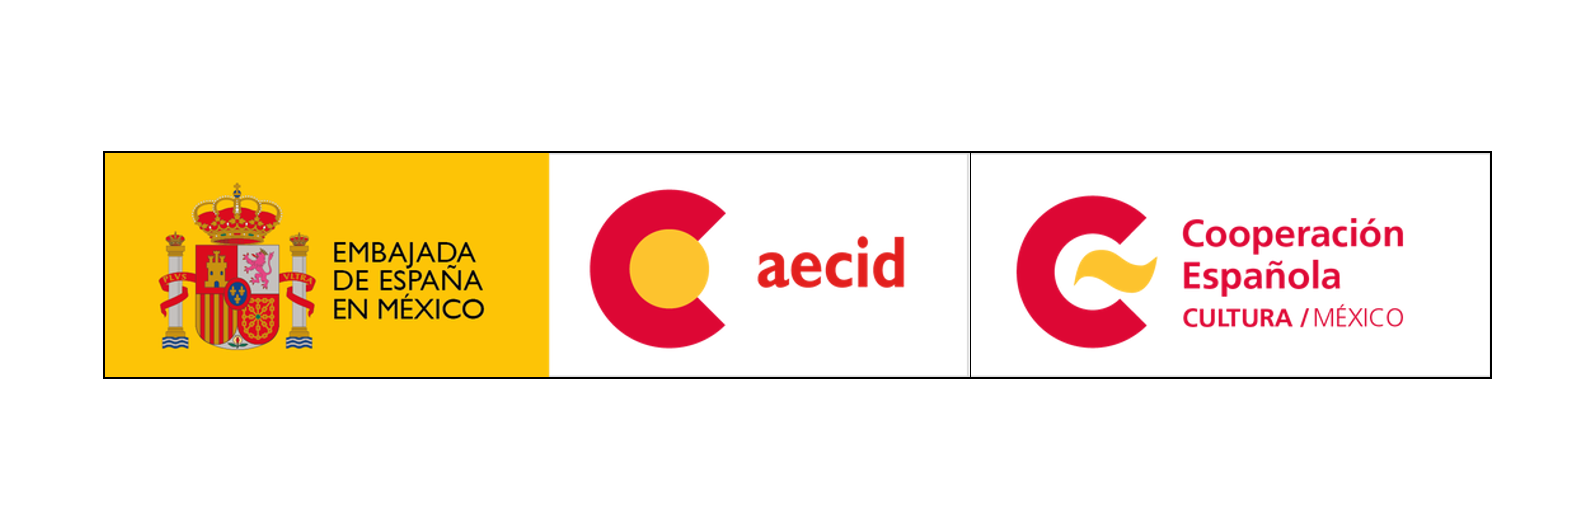 AECID Cooperación Española